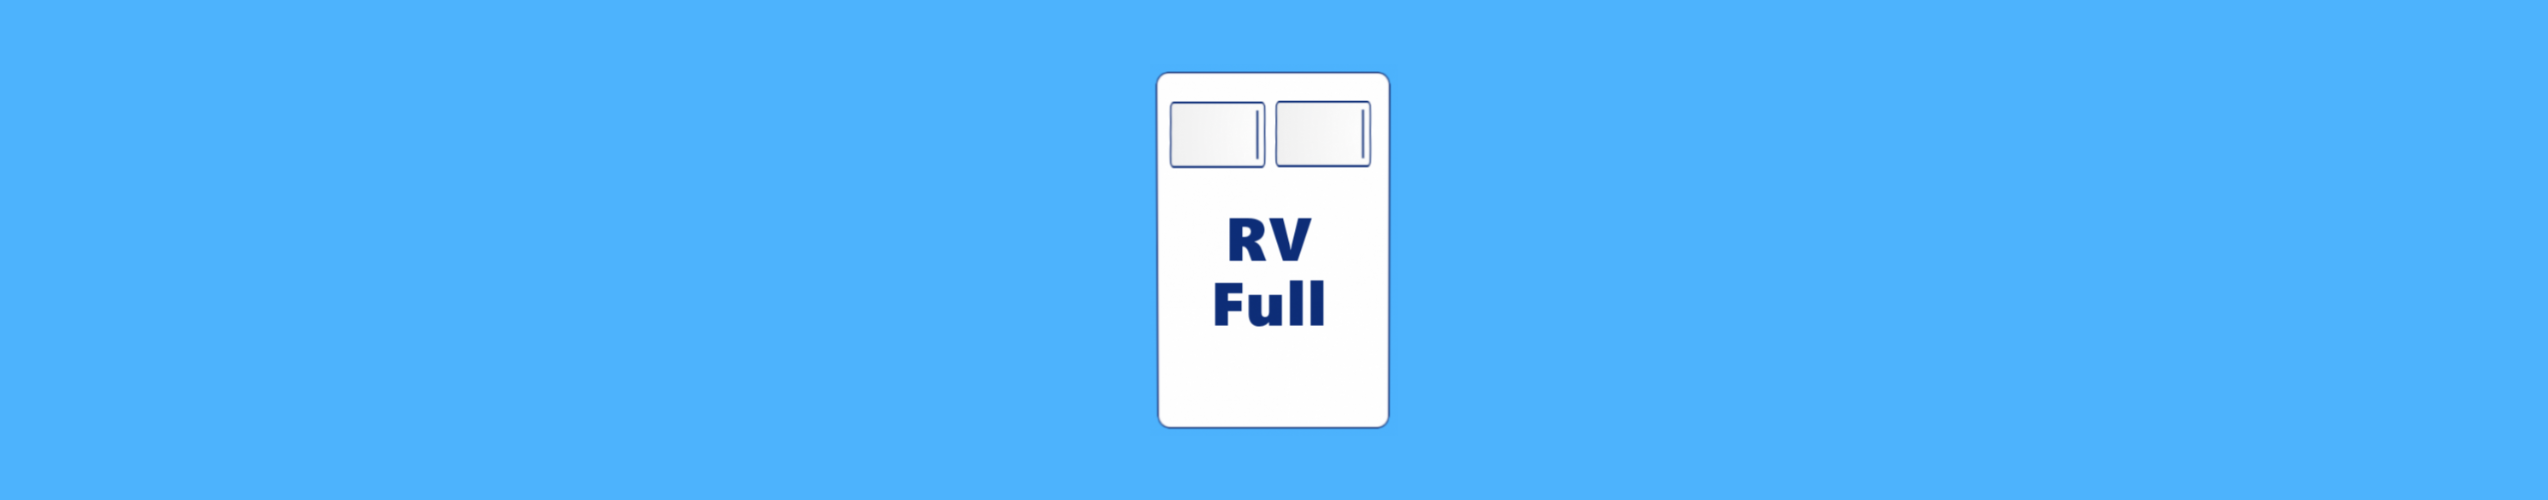 rv full mattress size